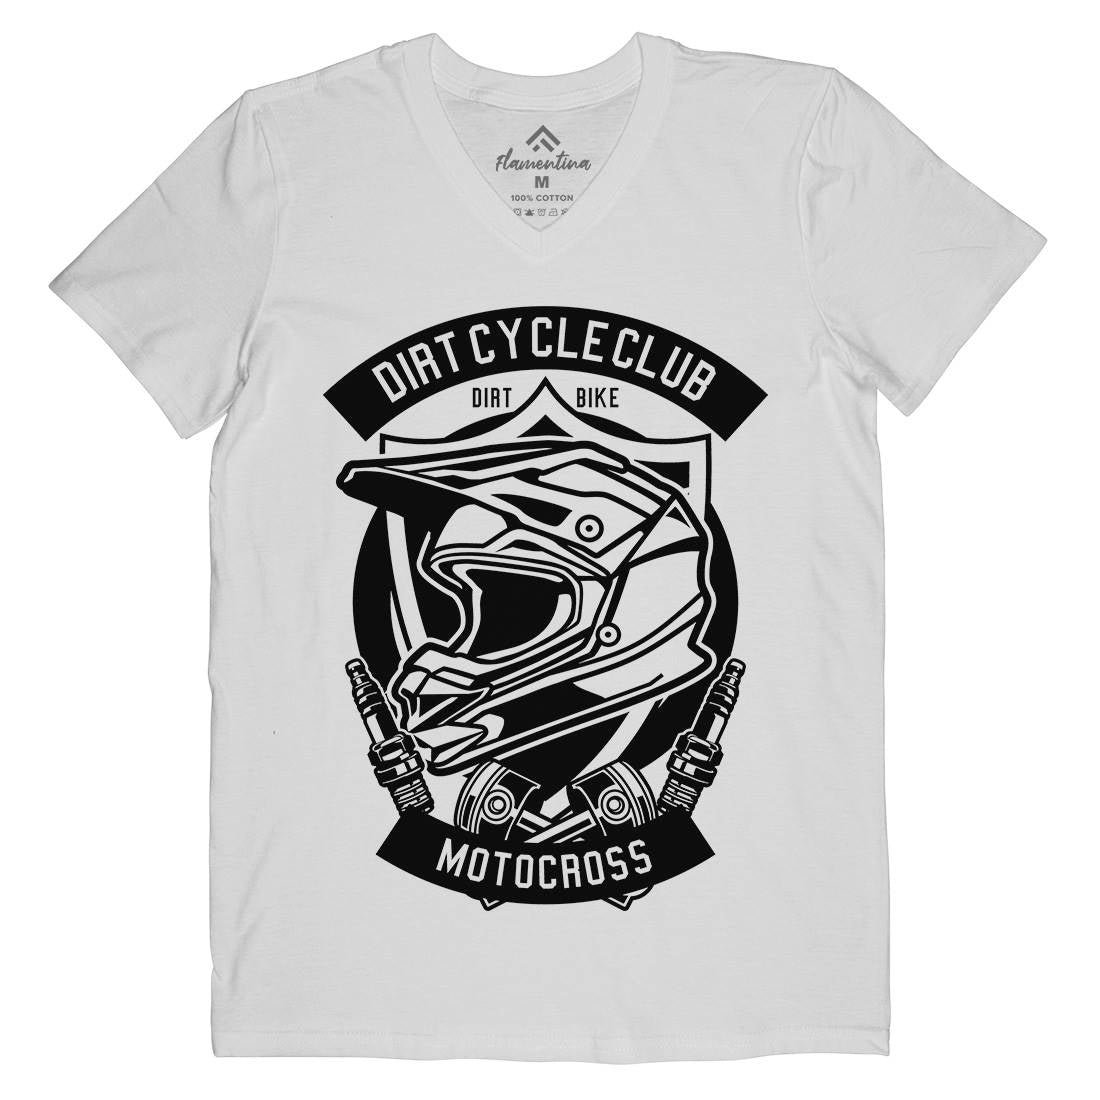 Dirty Cycle Club Mens V-Neck T-Shirt Motorcycles B532